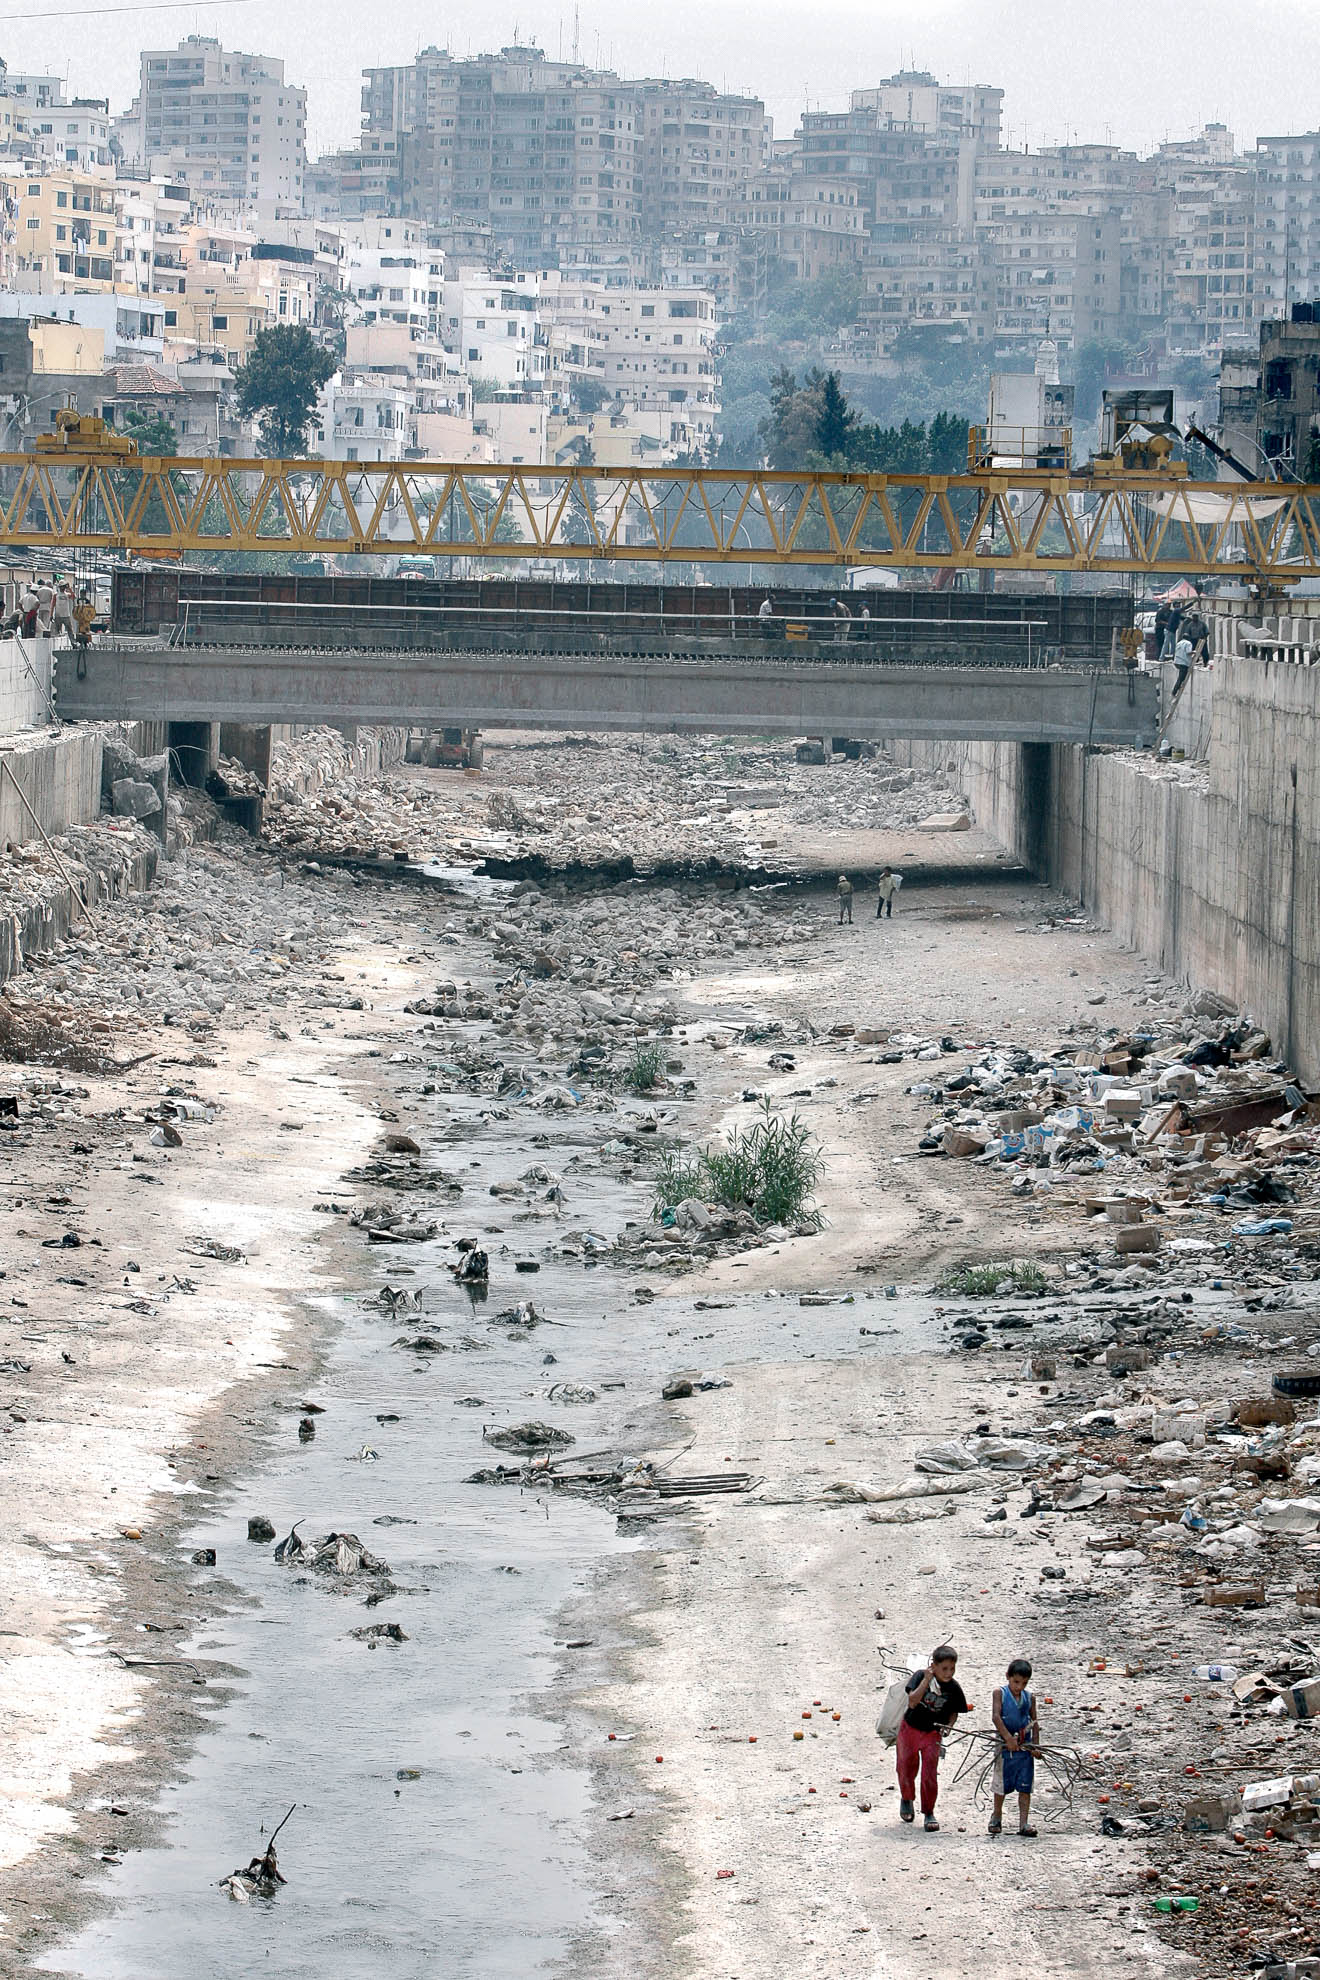 La fotografía muestra un río en la ciudad de Trípoli. Decenas de niños sobreviven recogiendo restos de la basura que arrojan los mercaderes y vecinos de las zonas cercanas al río. Trípoli está al norte del país. Además de la pobreza y las insalubres condiciones de vida, la ciudad es escenario de luchas protagonizadas por las diferentes milicias islámicas, suníes y chiíes, que siembran la ciudad de bombas y protagonizan enfrentamientos armados en sus calles.